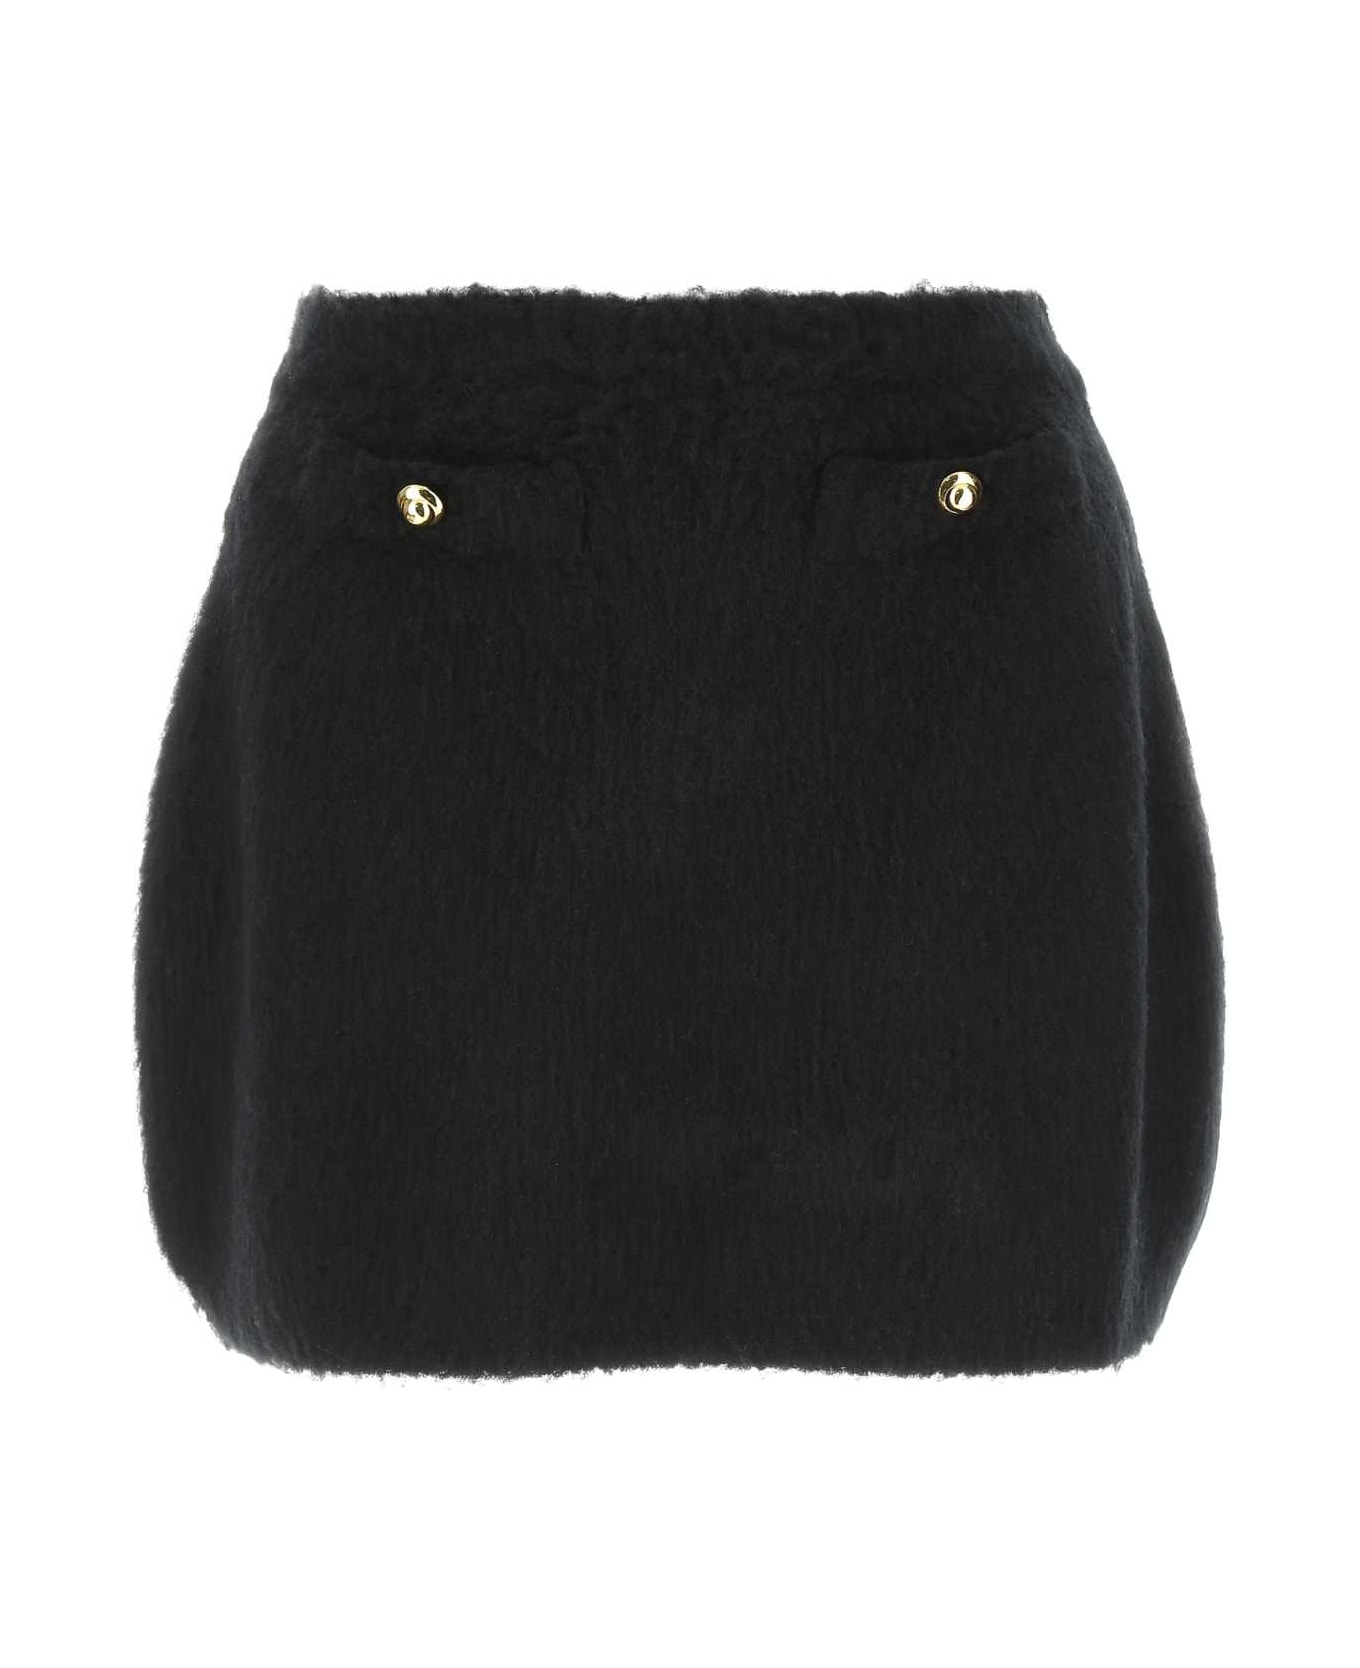 Miu Miu Black Stretch Wool Blend Mini Skirt - Black